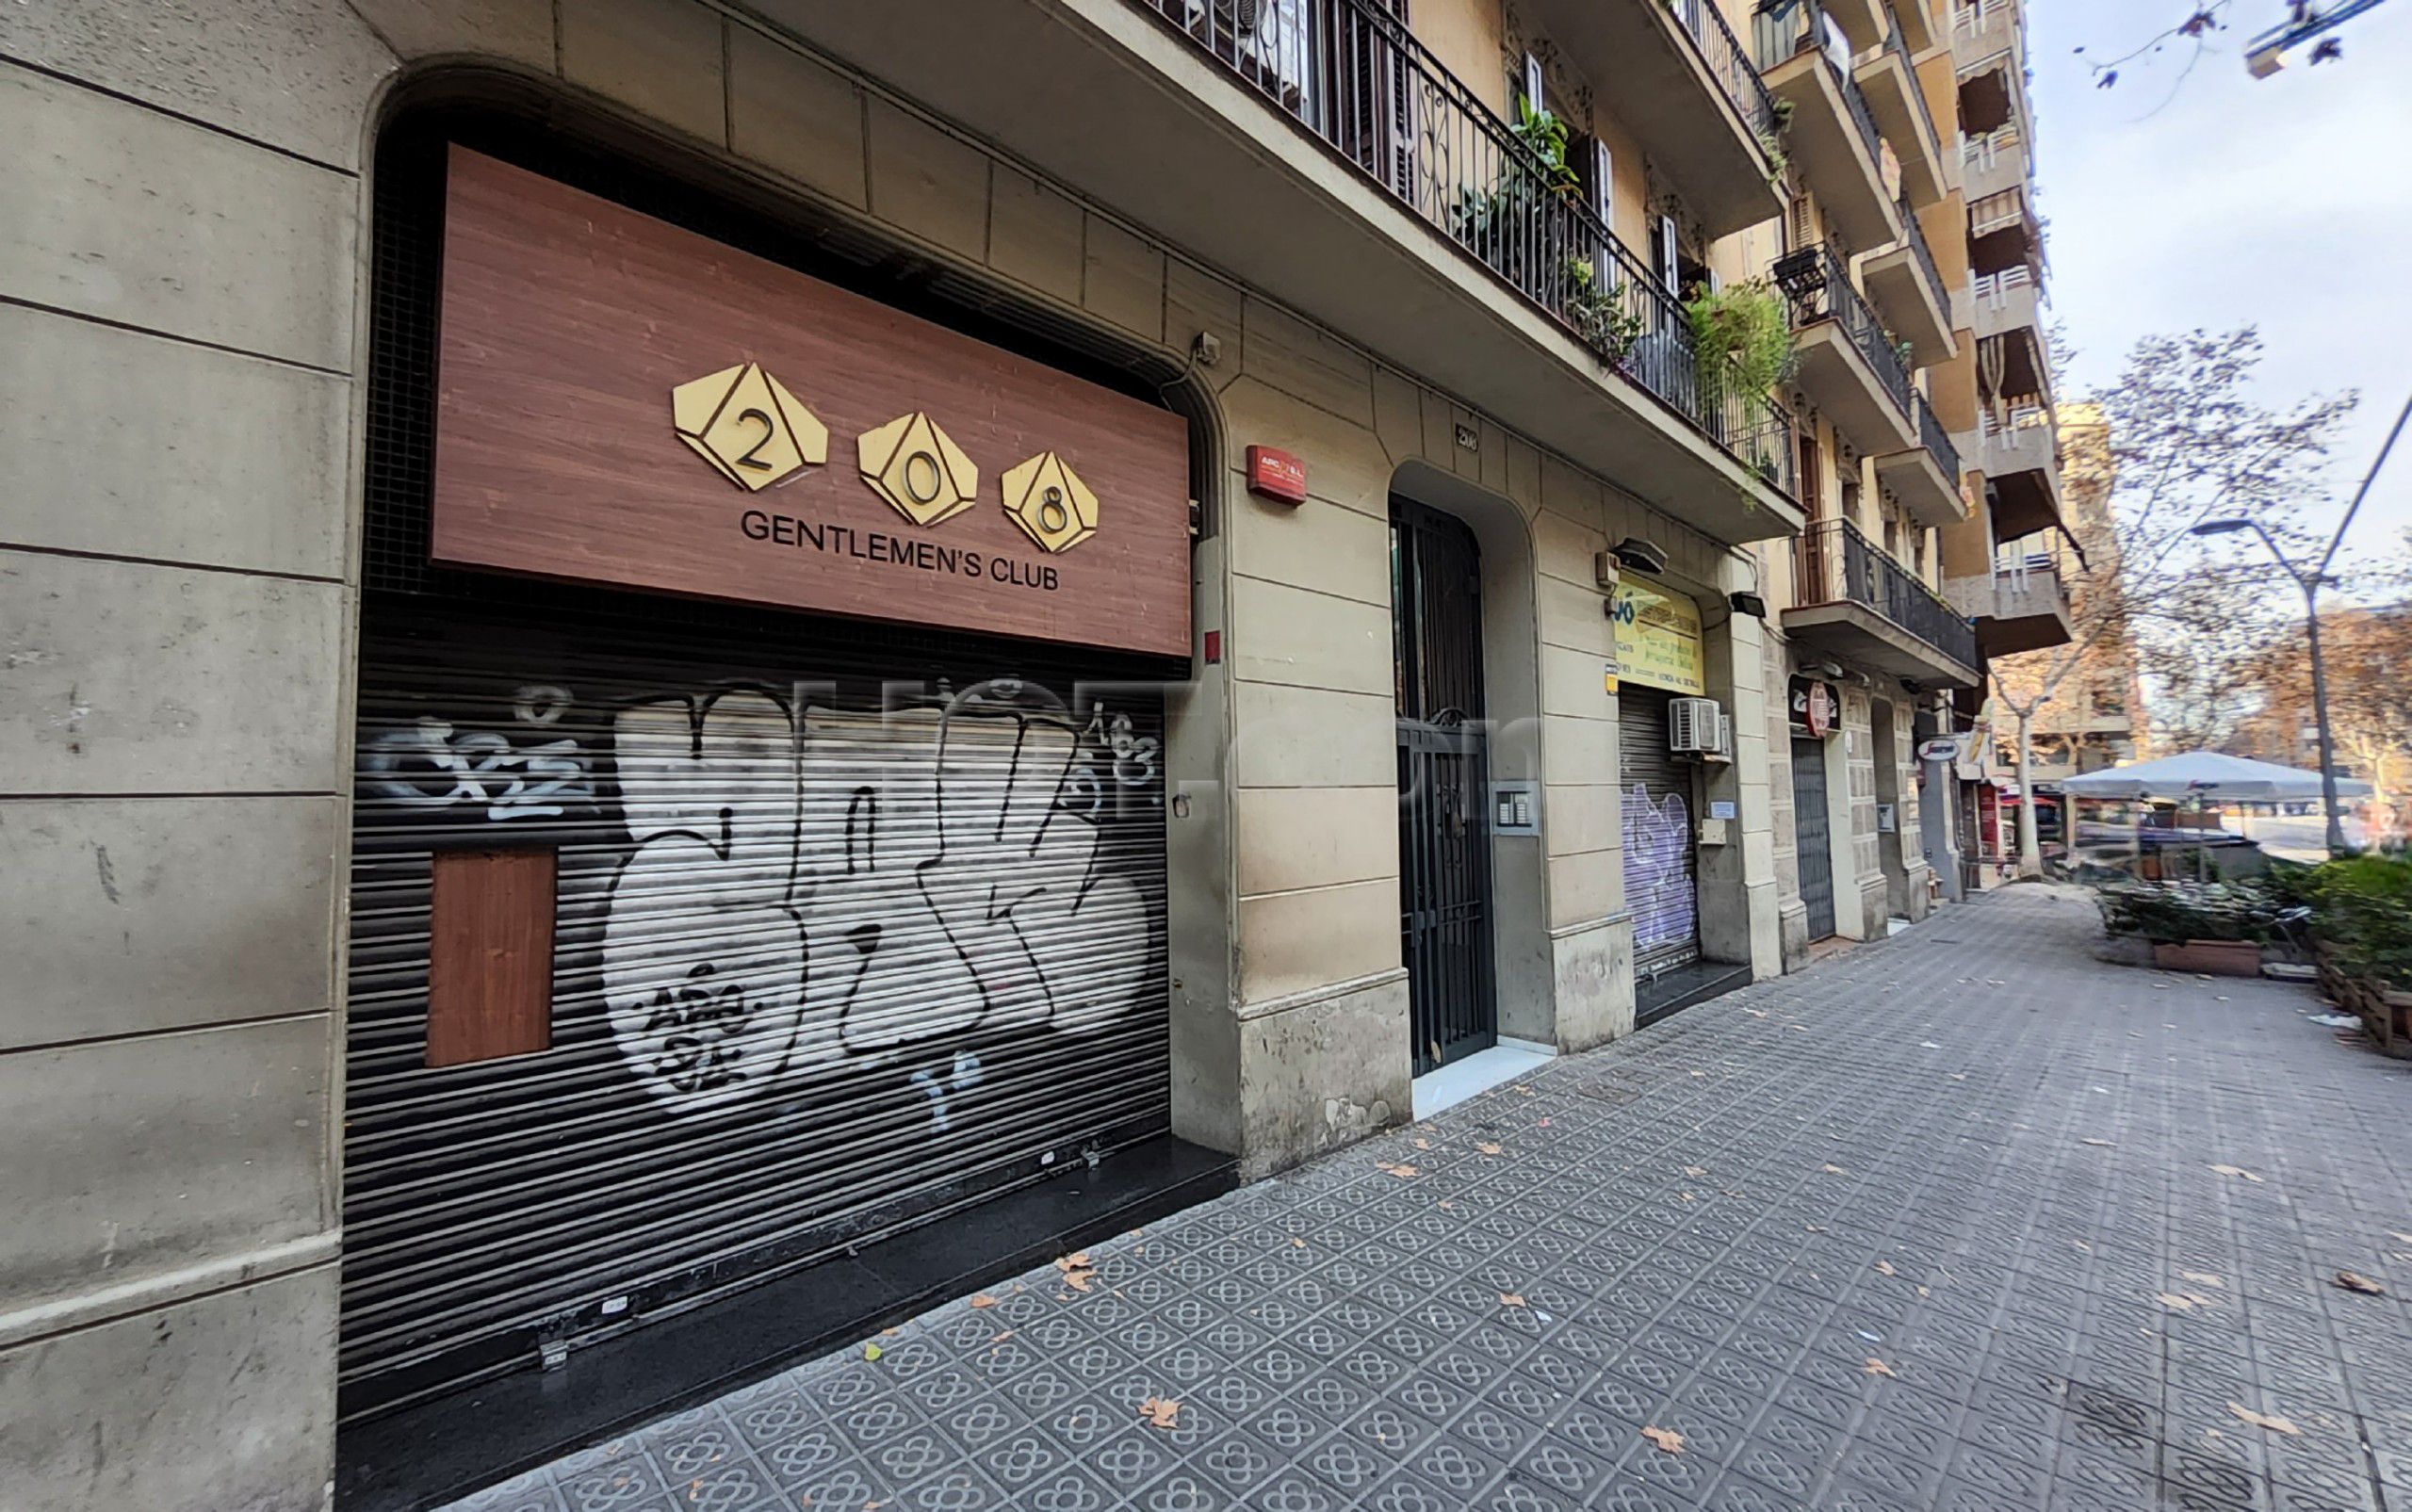 Barcelona, Spain 208 Gentlemen's Club